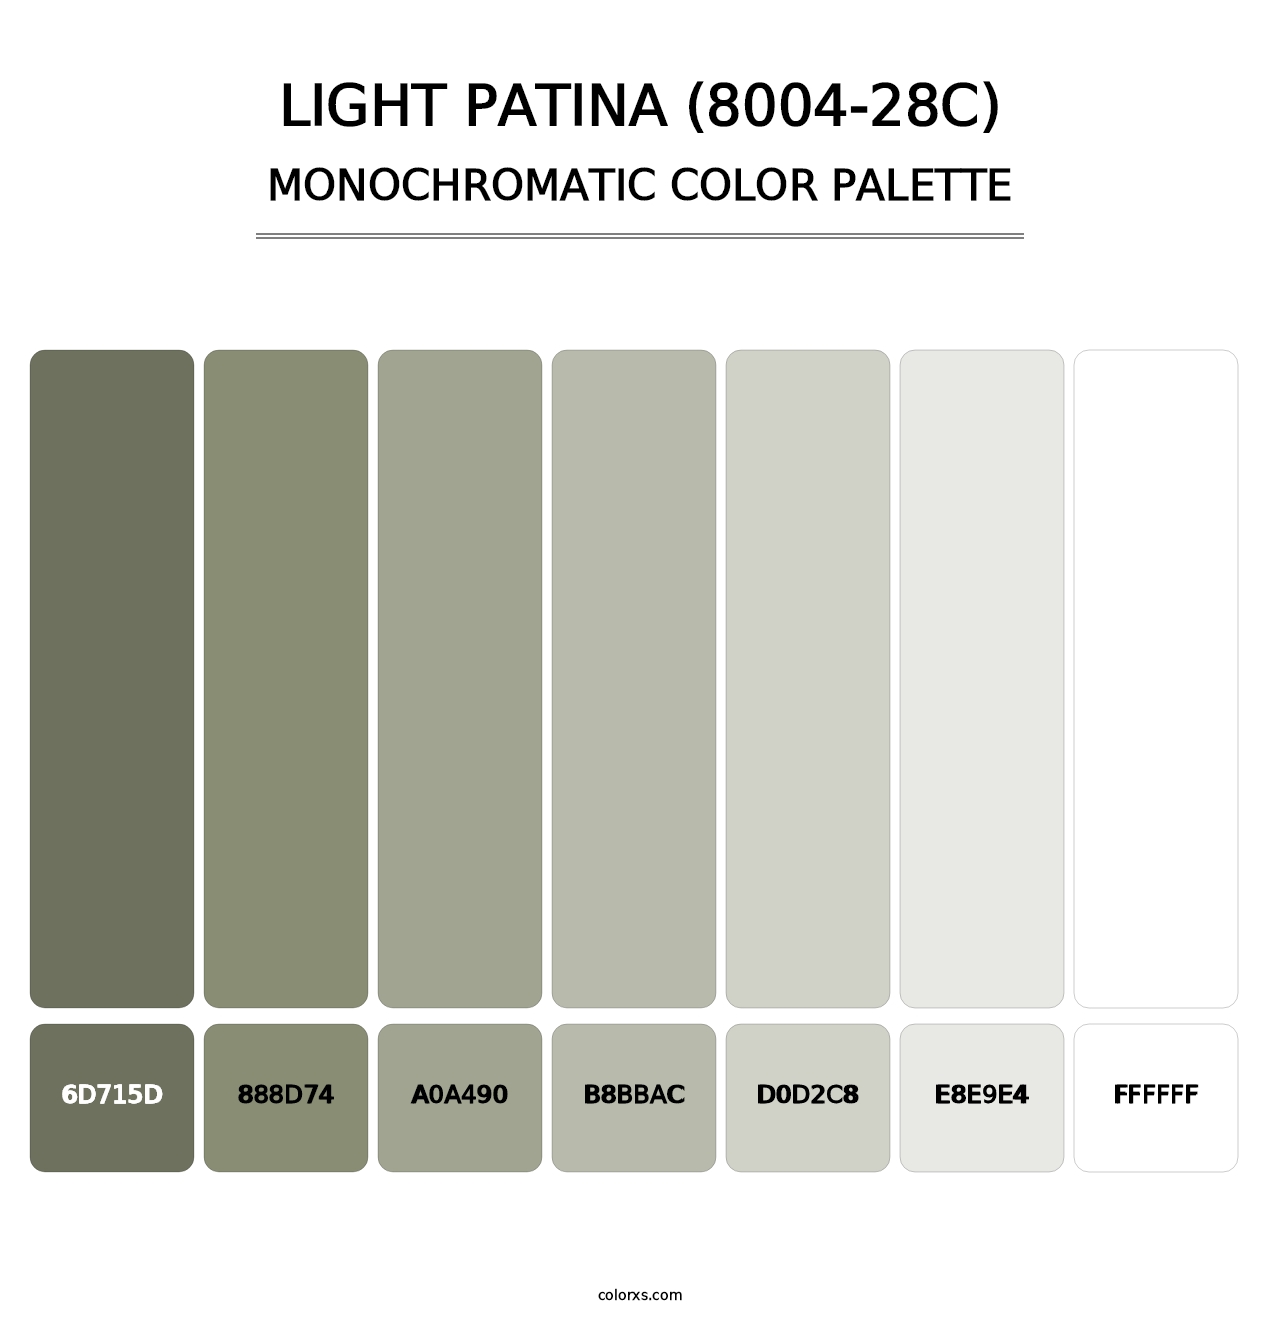 Light Patina (8004-28C) - Monochromatic Color Palette